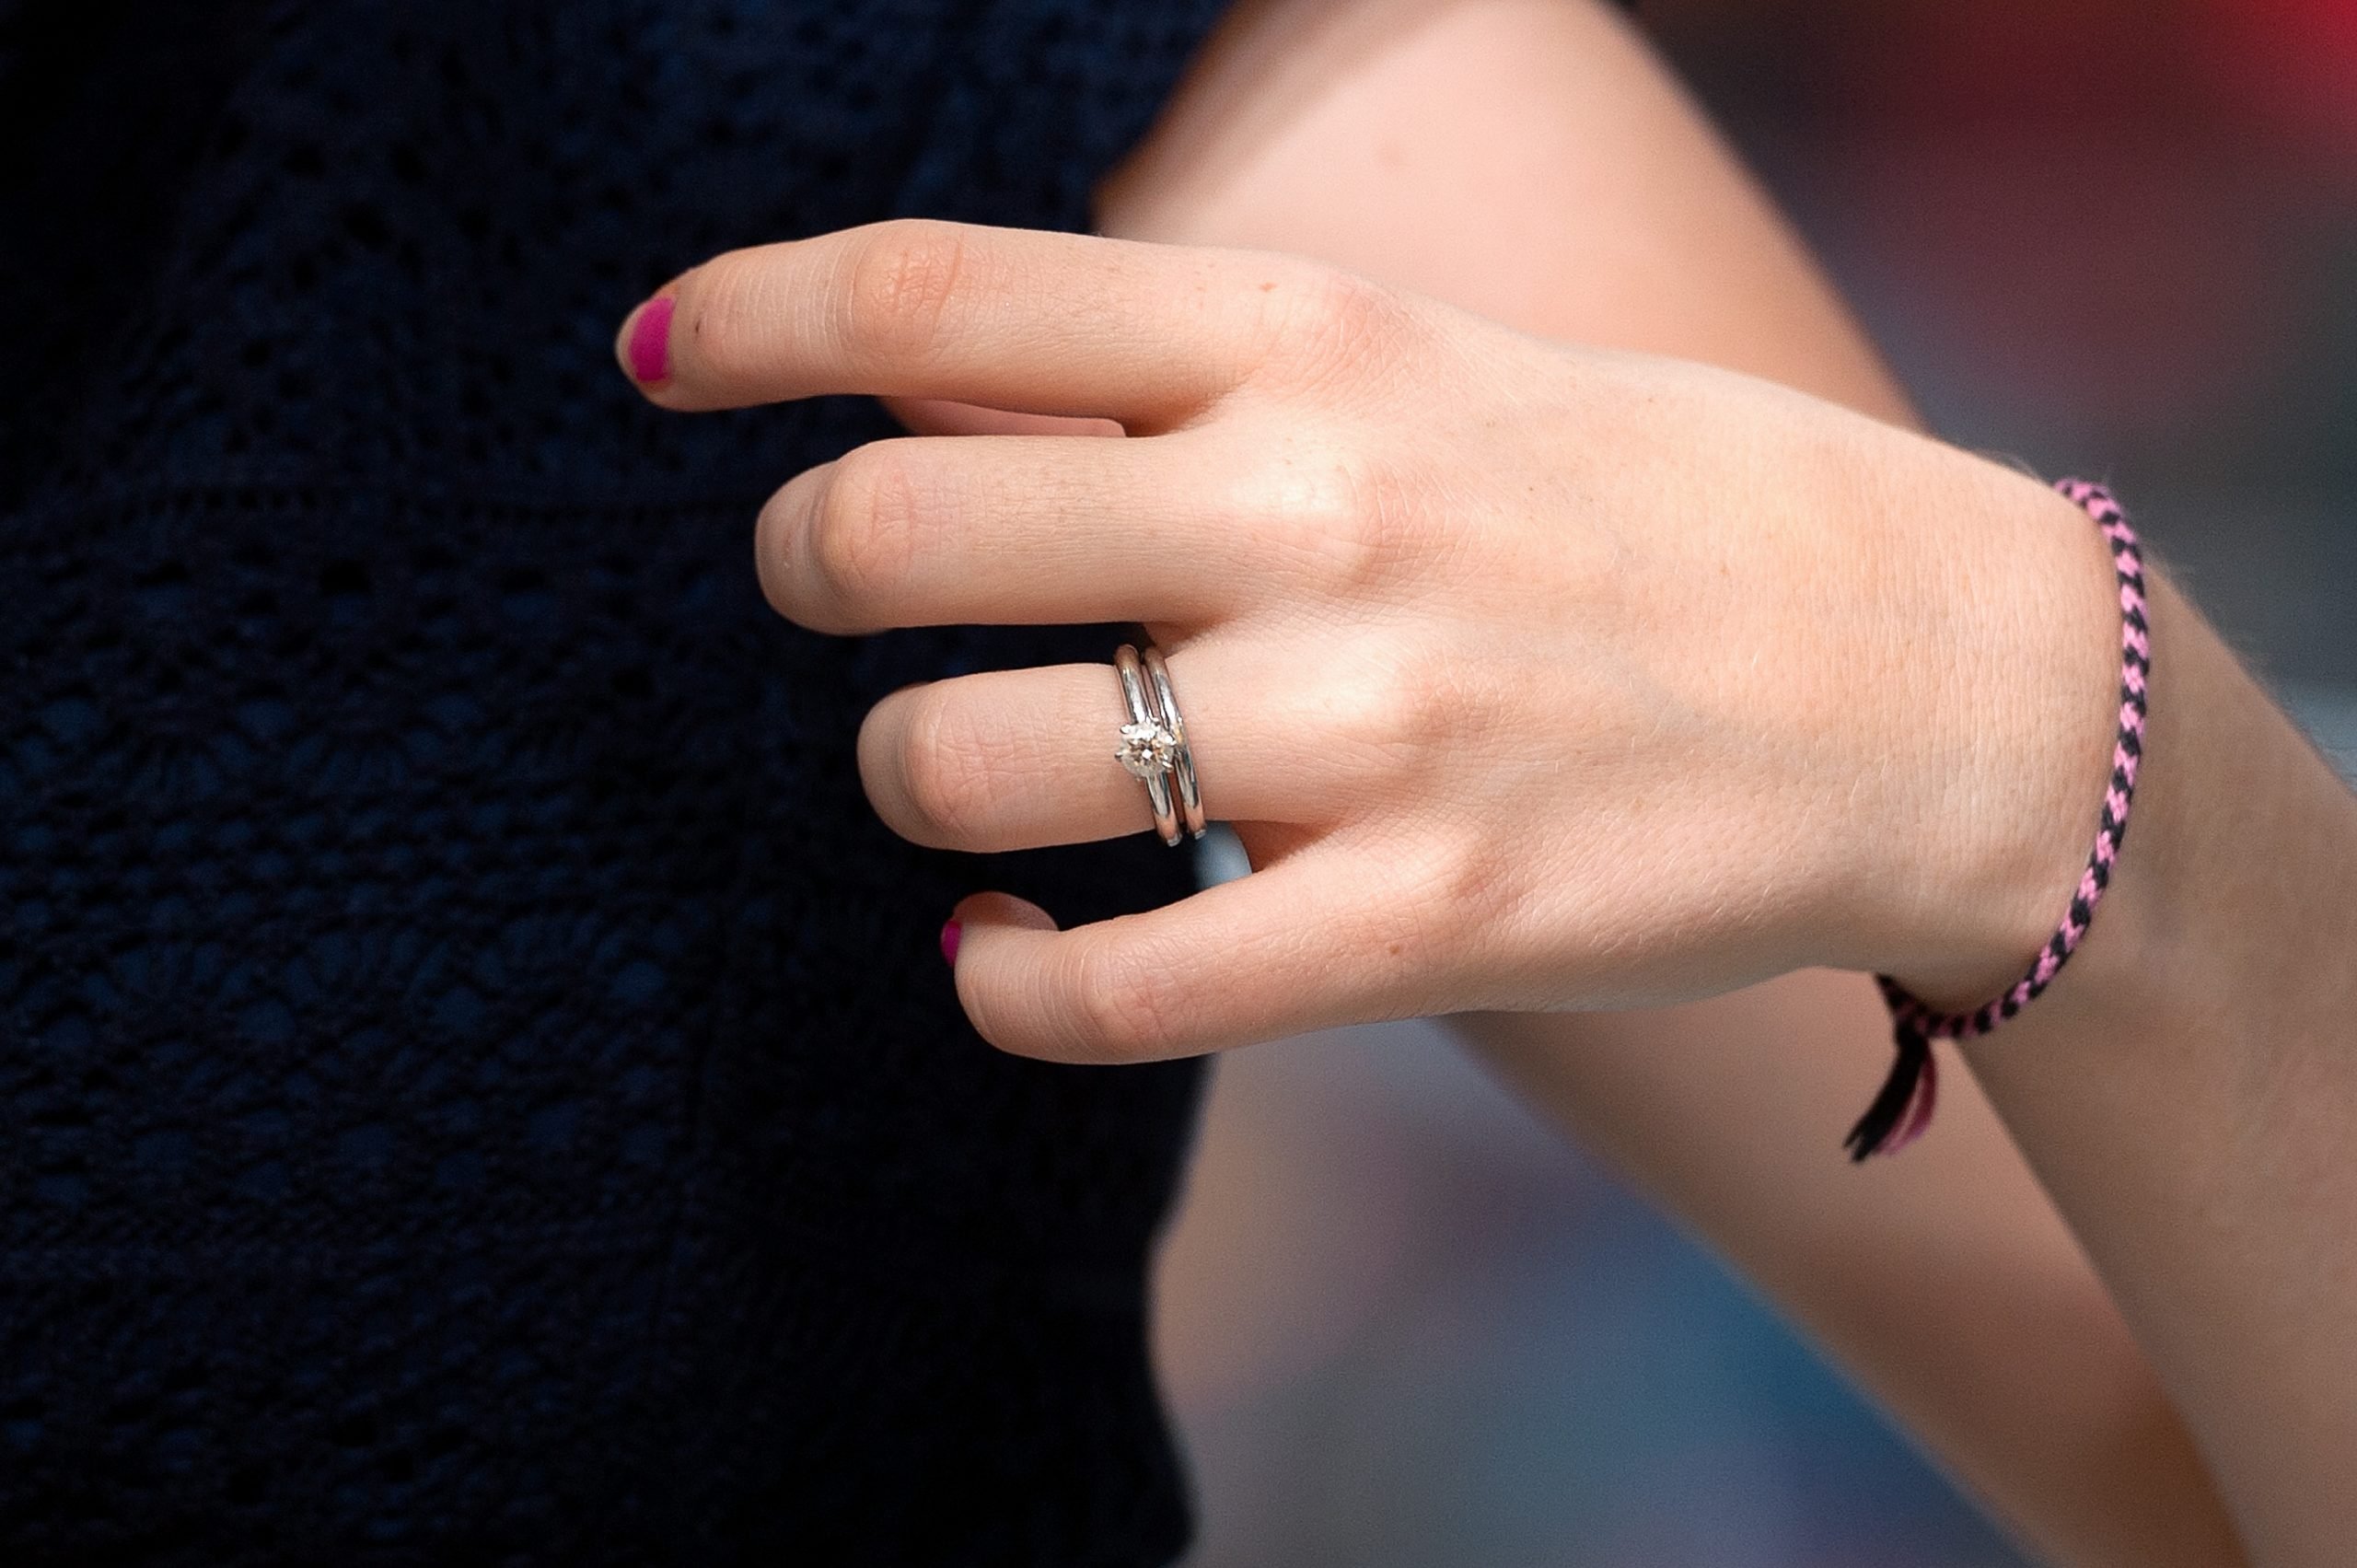 A closeup of Jill Duggar's engagement ring